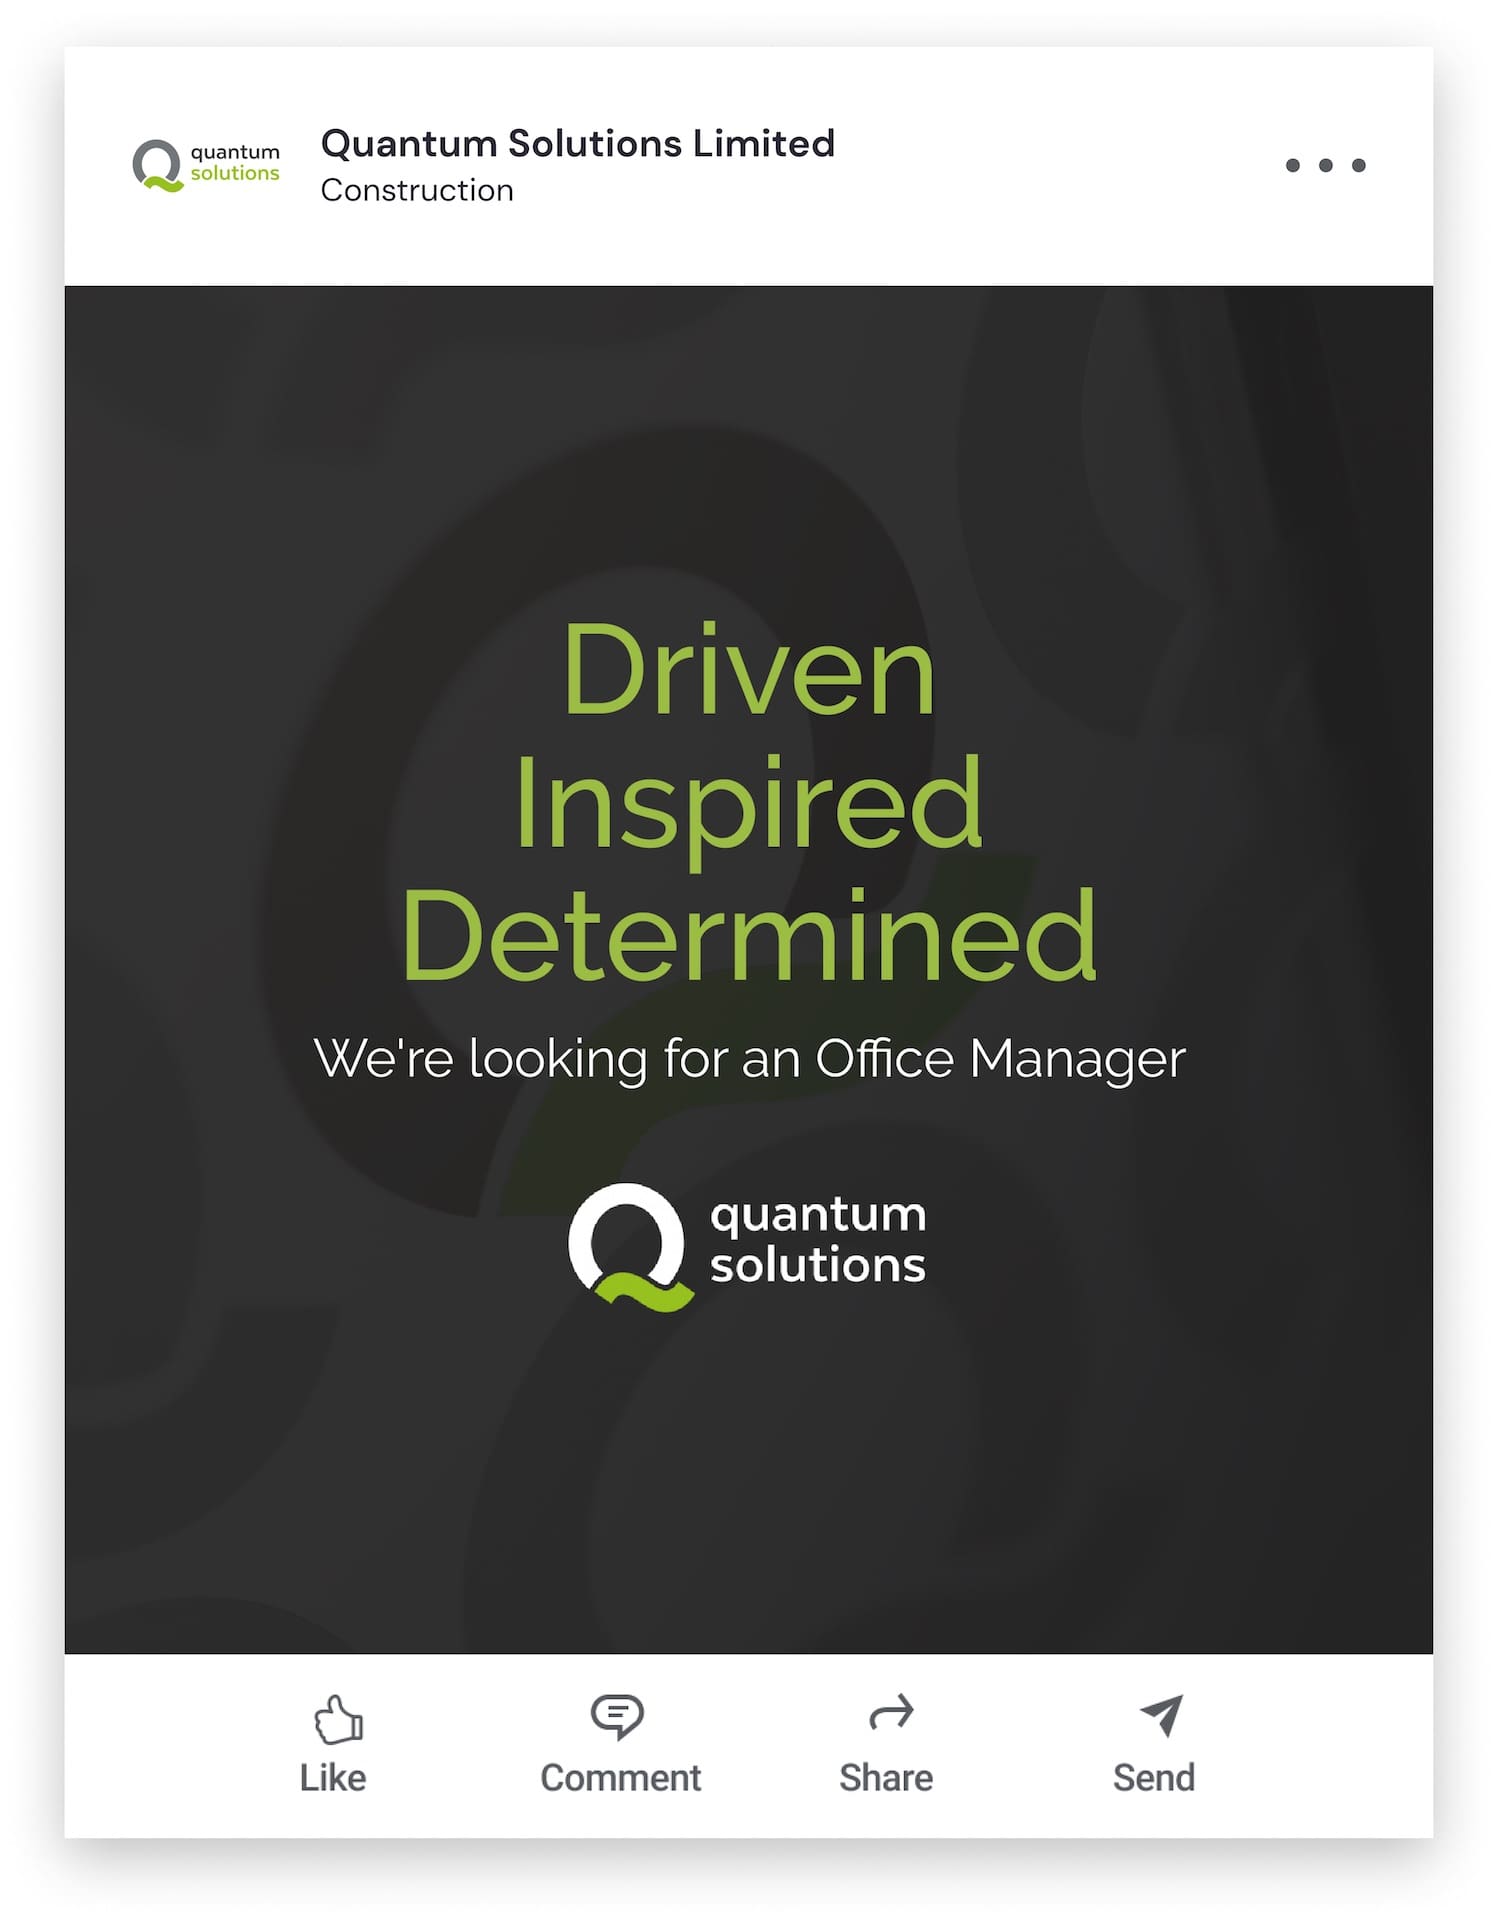 LinkedIn post illustrating a Quantum Solutions vacancy